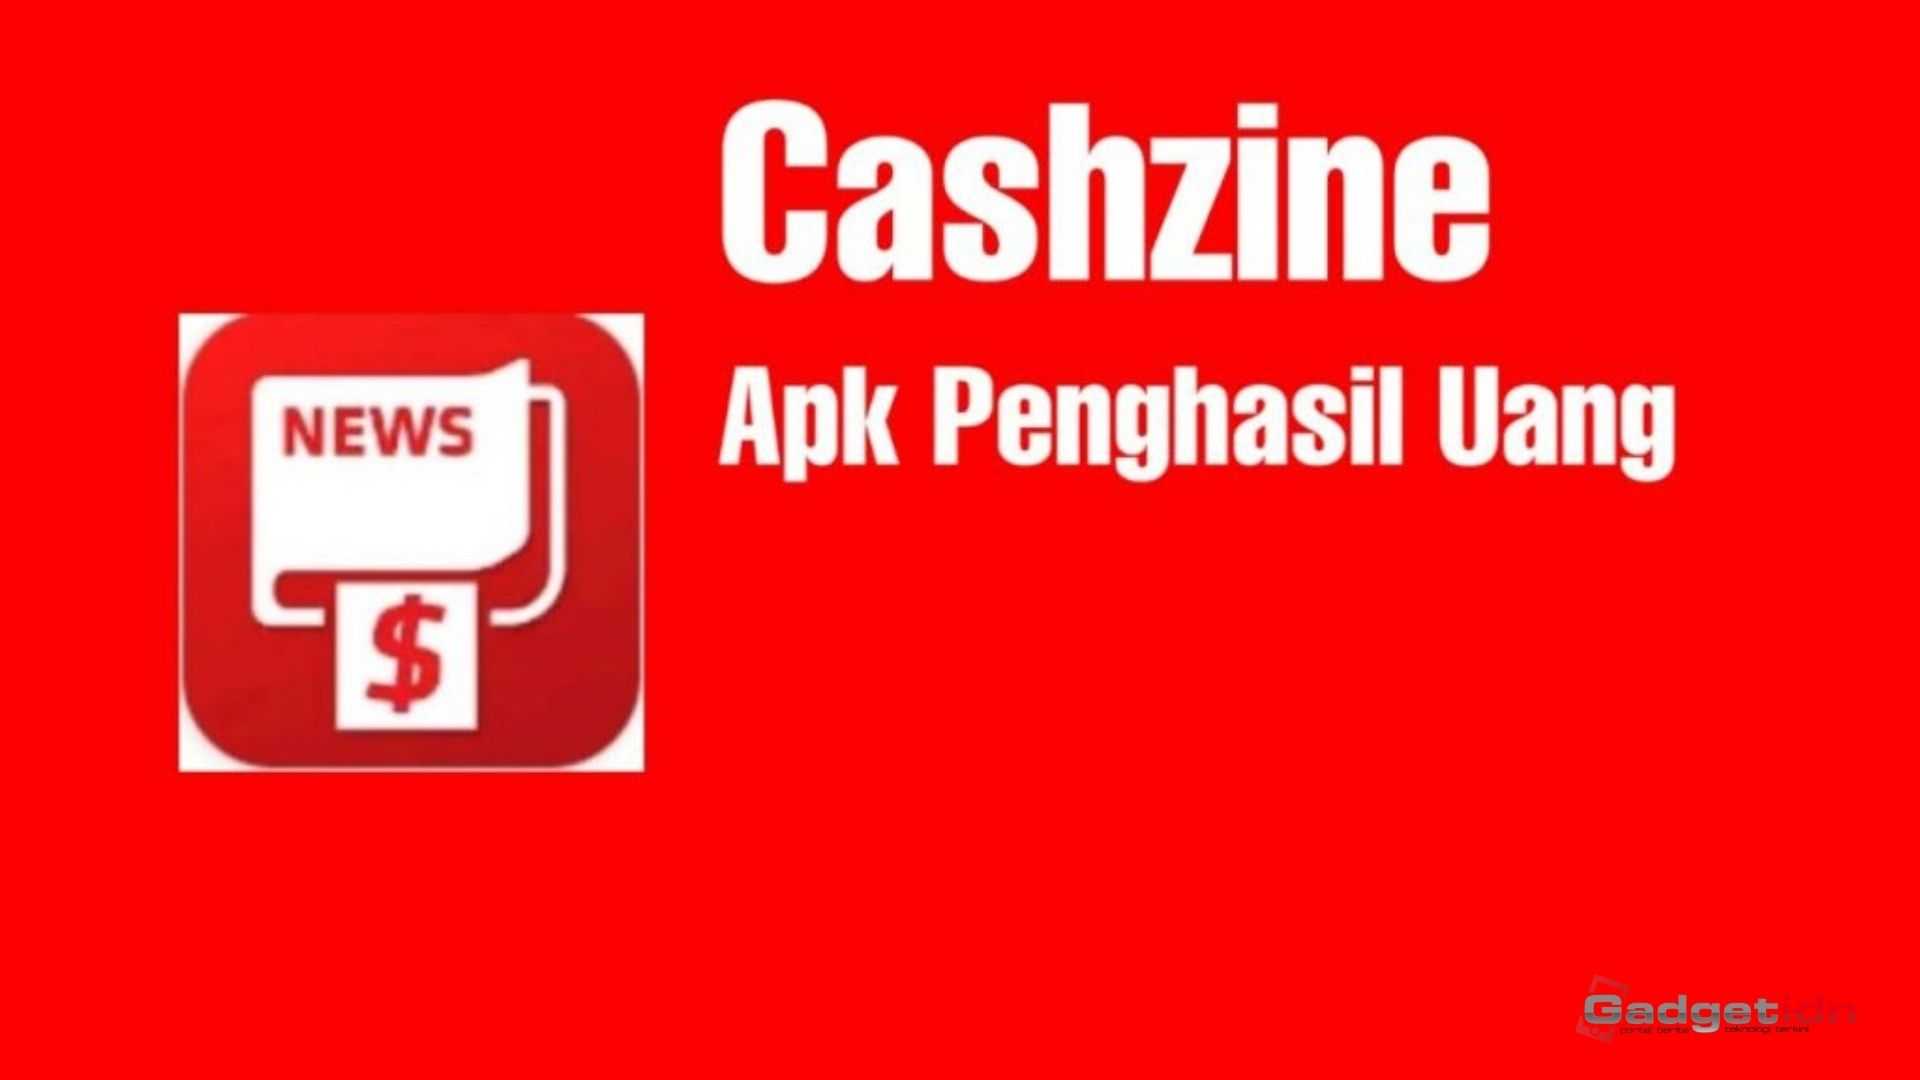 cara menghasilkan uang dari Cashzine APK